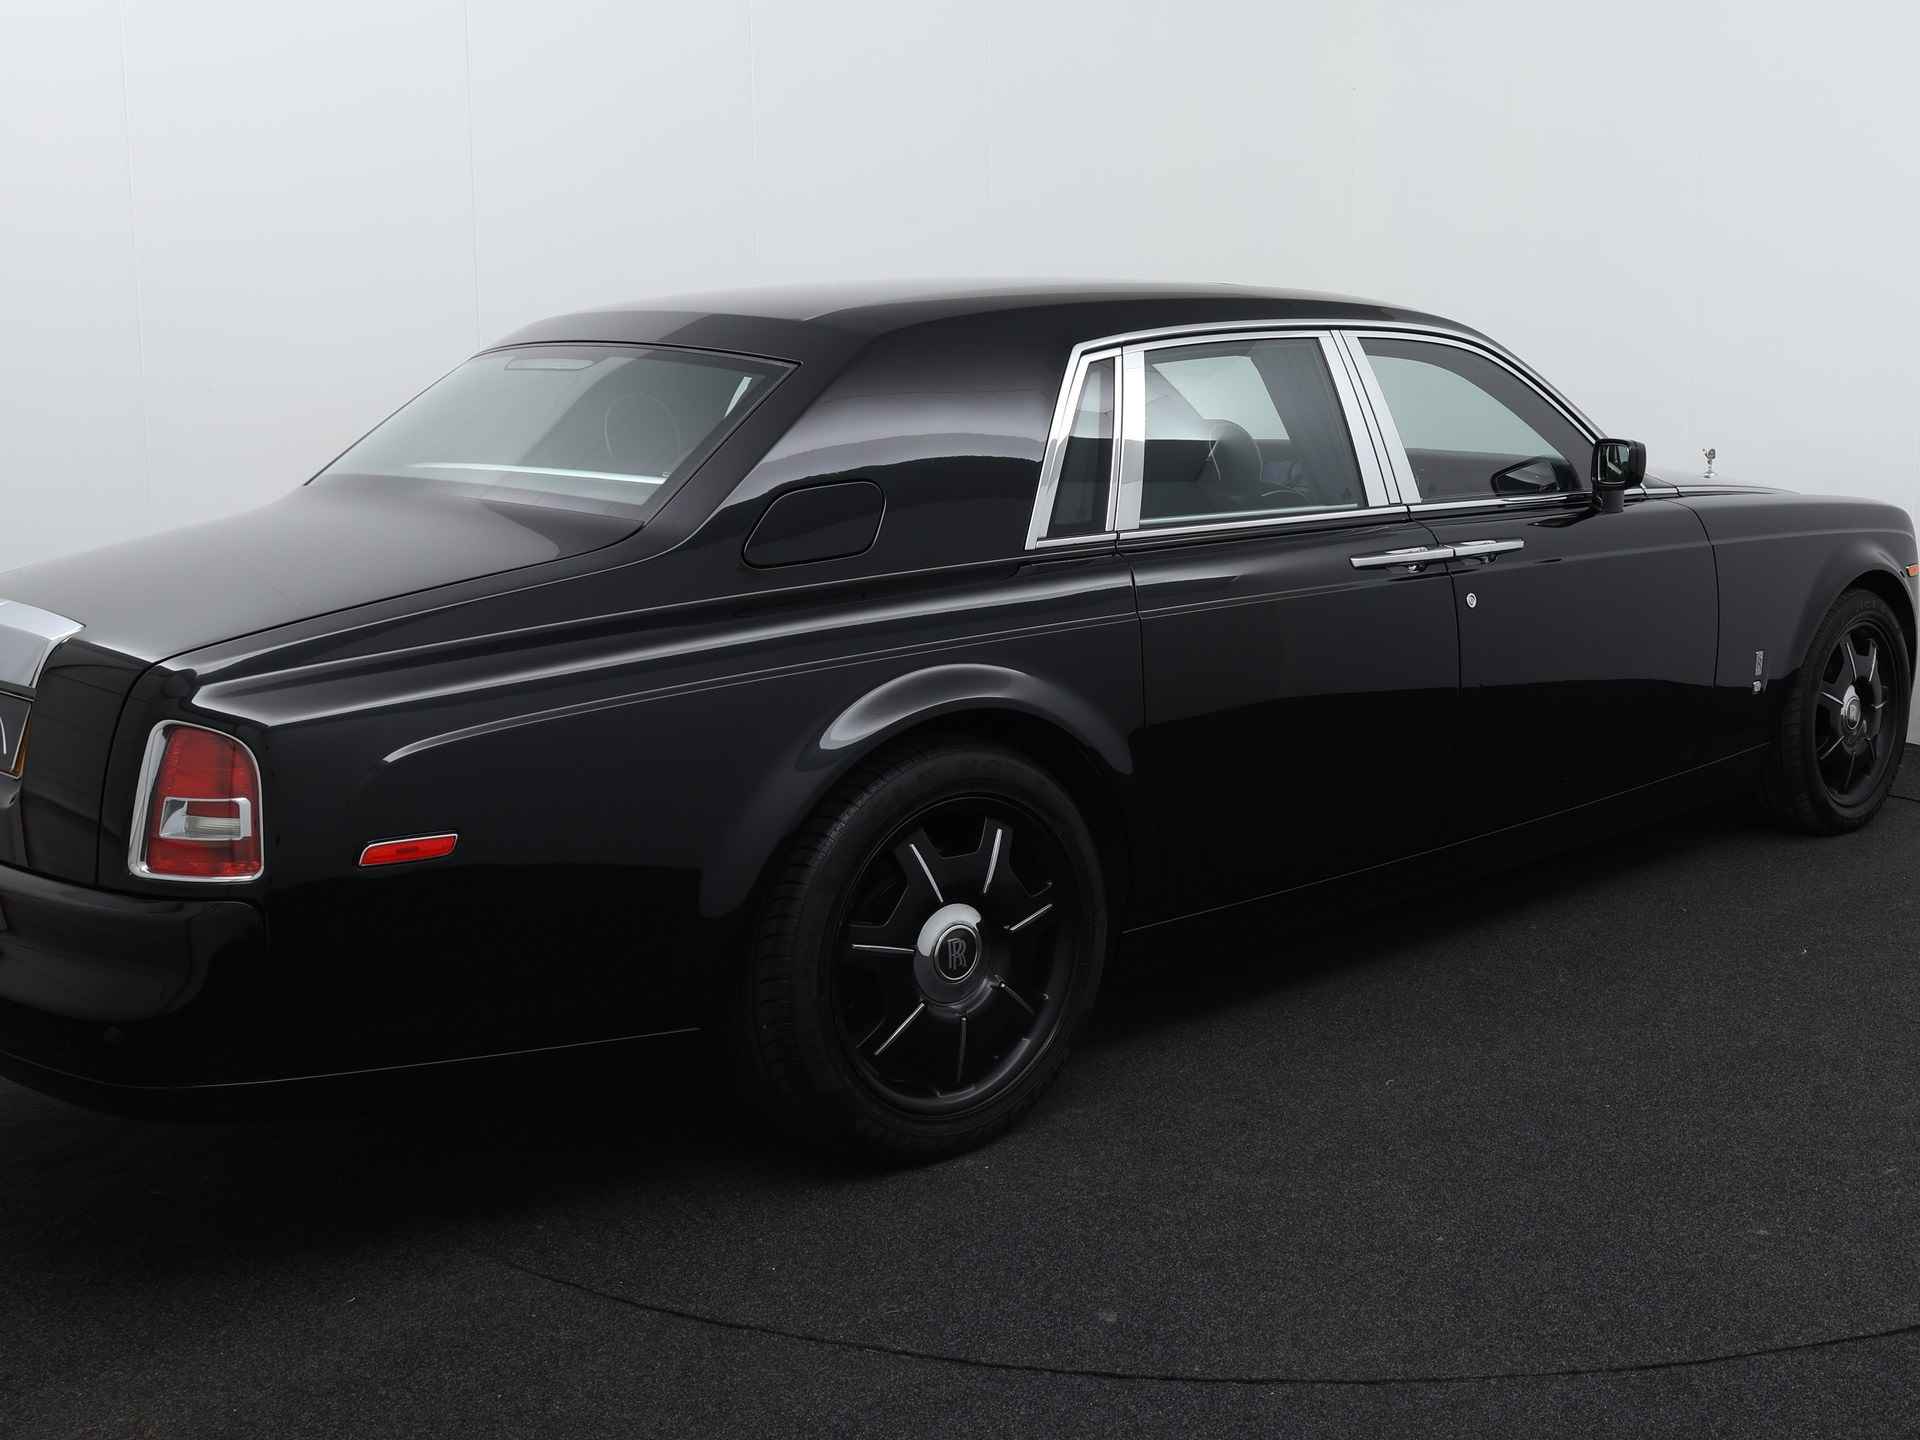 Rolls-Royce Phantom 6.7 V12 Black Edition Full Serv. Historie - 4/42